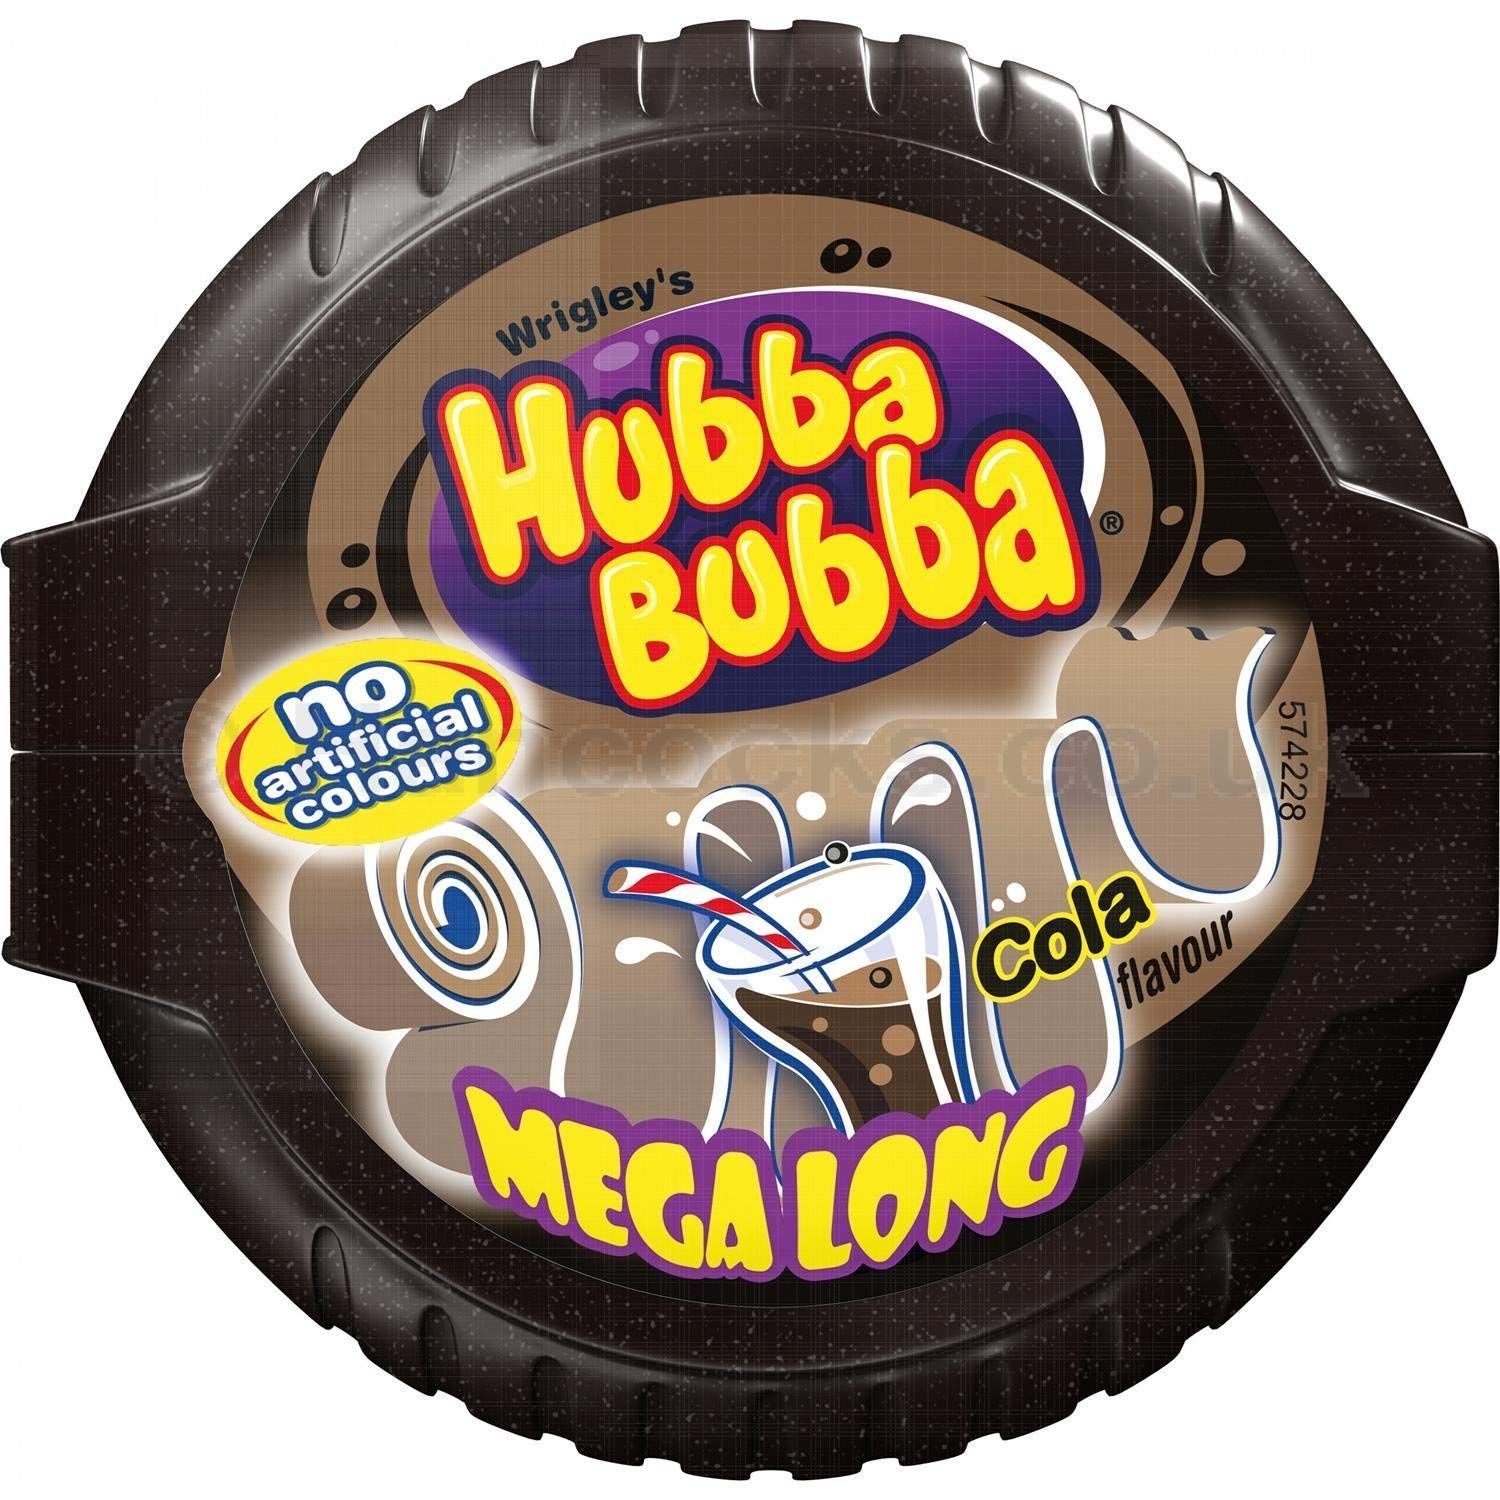 Hubba Bubba Bubble Tape Cola Gum Image